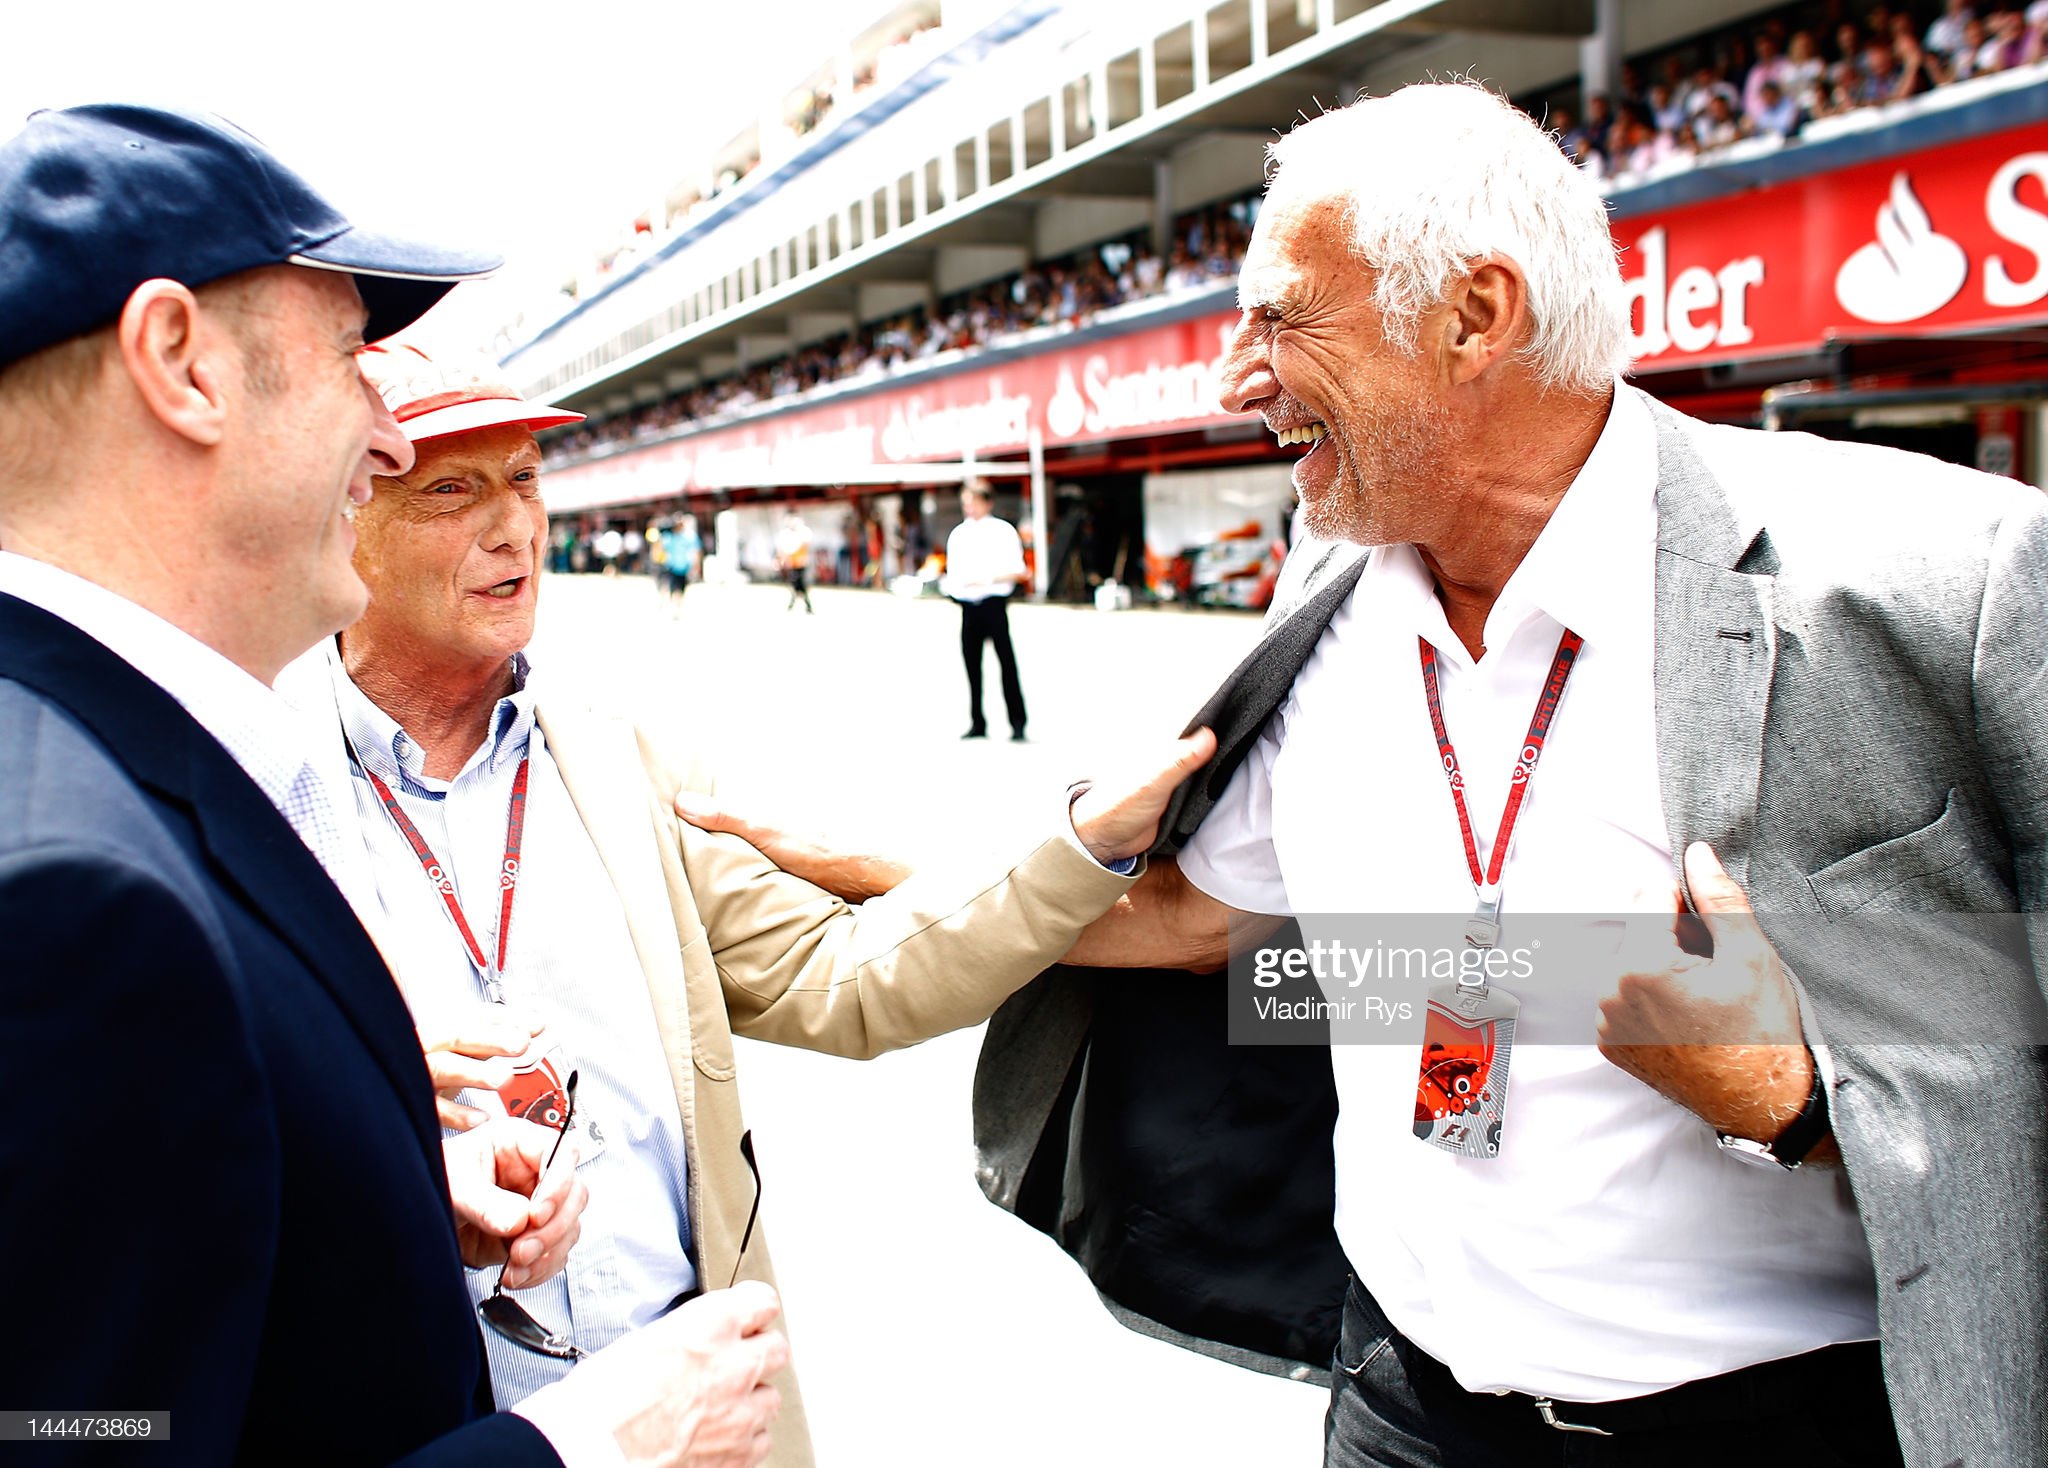 Dietrich Mateschitz speaks to Niki Lauda.